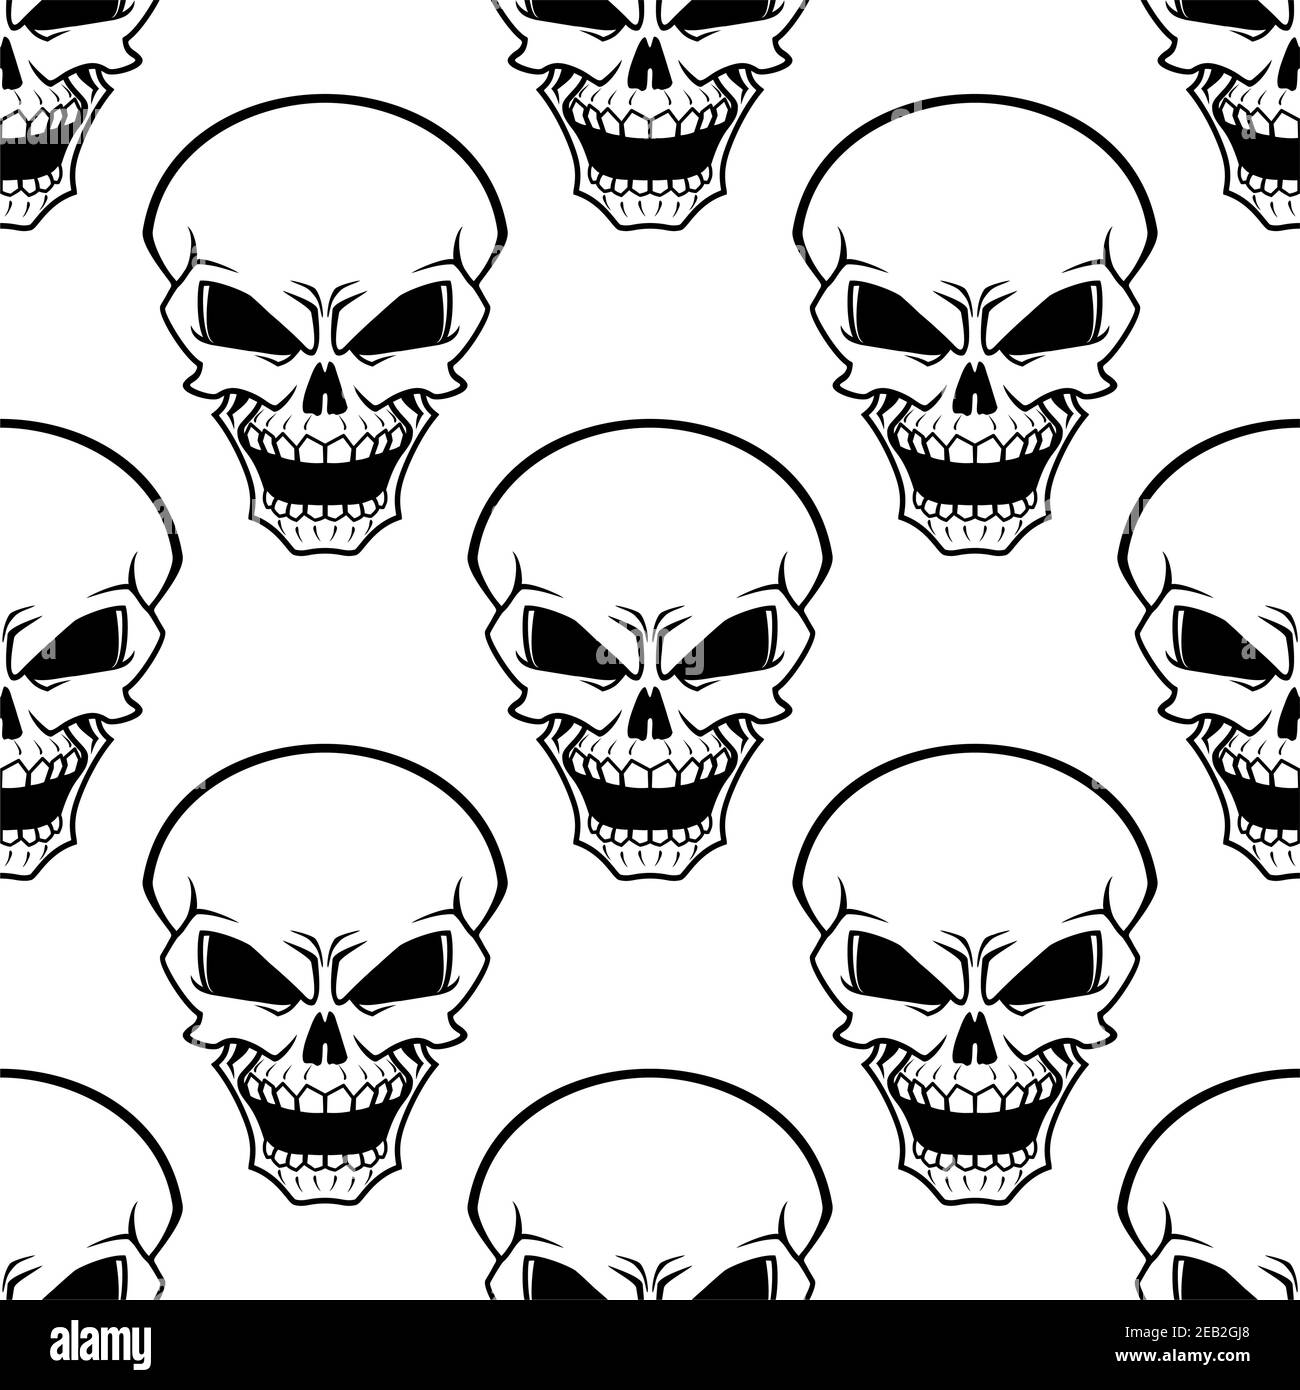 Böse menschliche Schädel nahtloses Muster mit aggressiven Grimassen auf weißem Hintergrund, für halloween-Design Stock Vektor